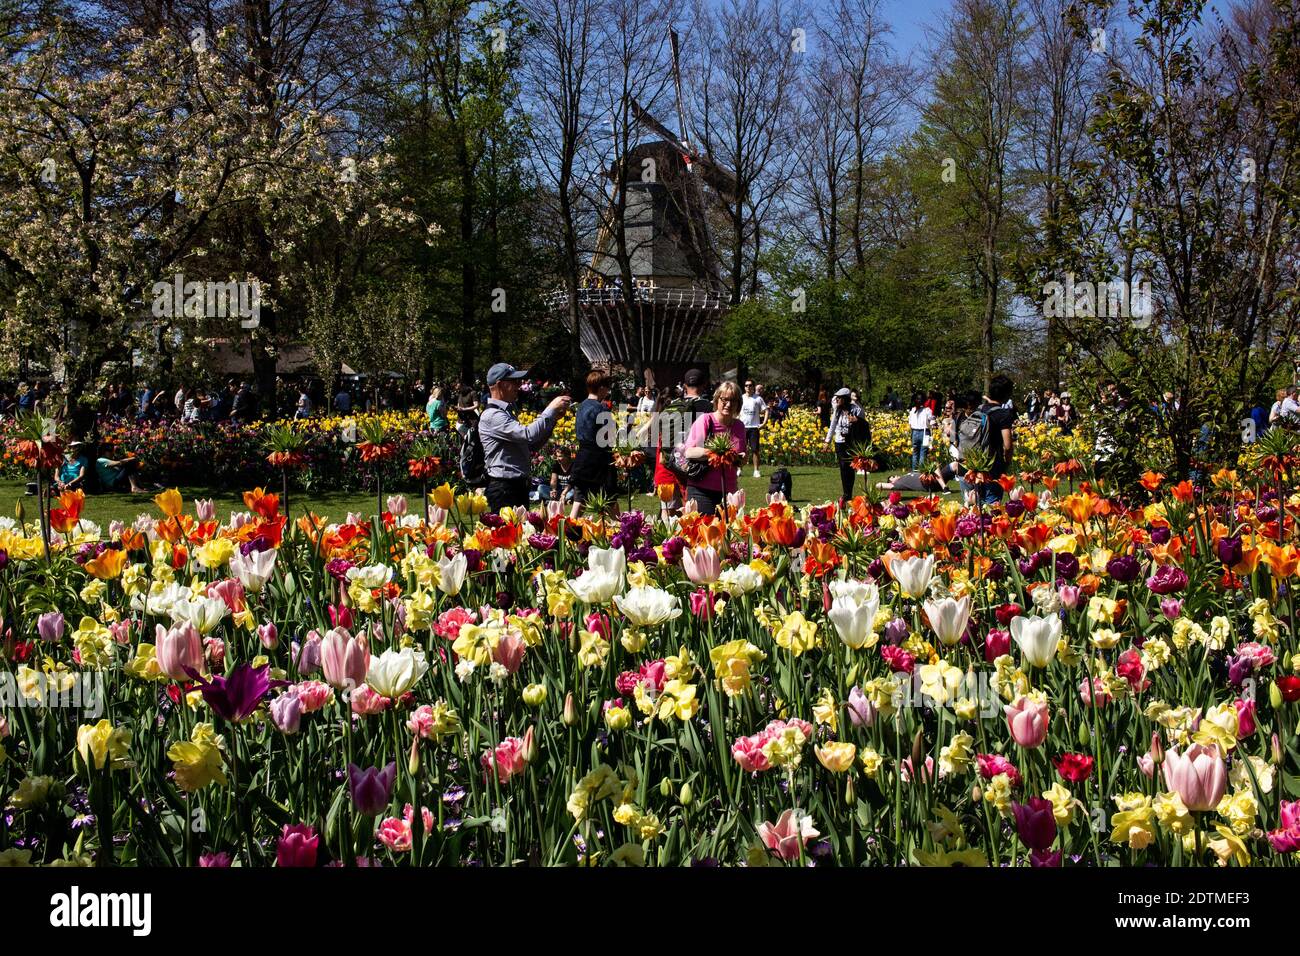 PAYS-BAS - TOURISME - KEUKENHOF Tourisme au chateau de Keukenhof au Pays-Bas,  grand jardin de fleurs et en particulier de tulipes. NETHERLANDS - TOURI  Stock Photo - Alamy